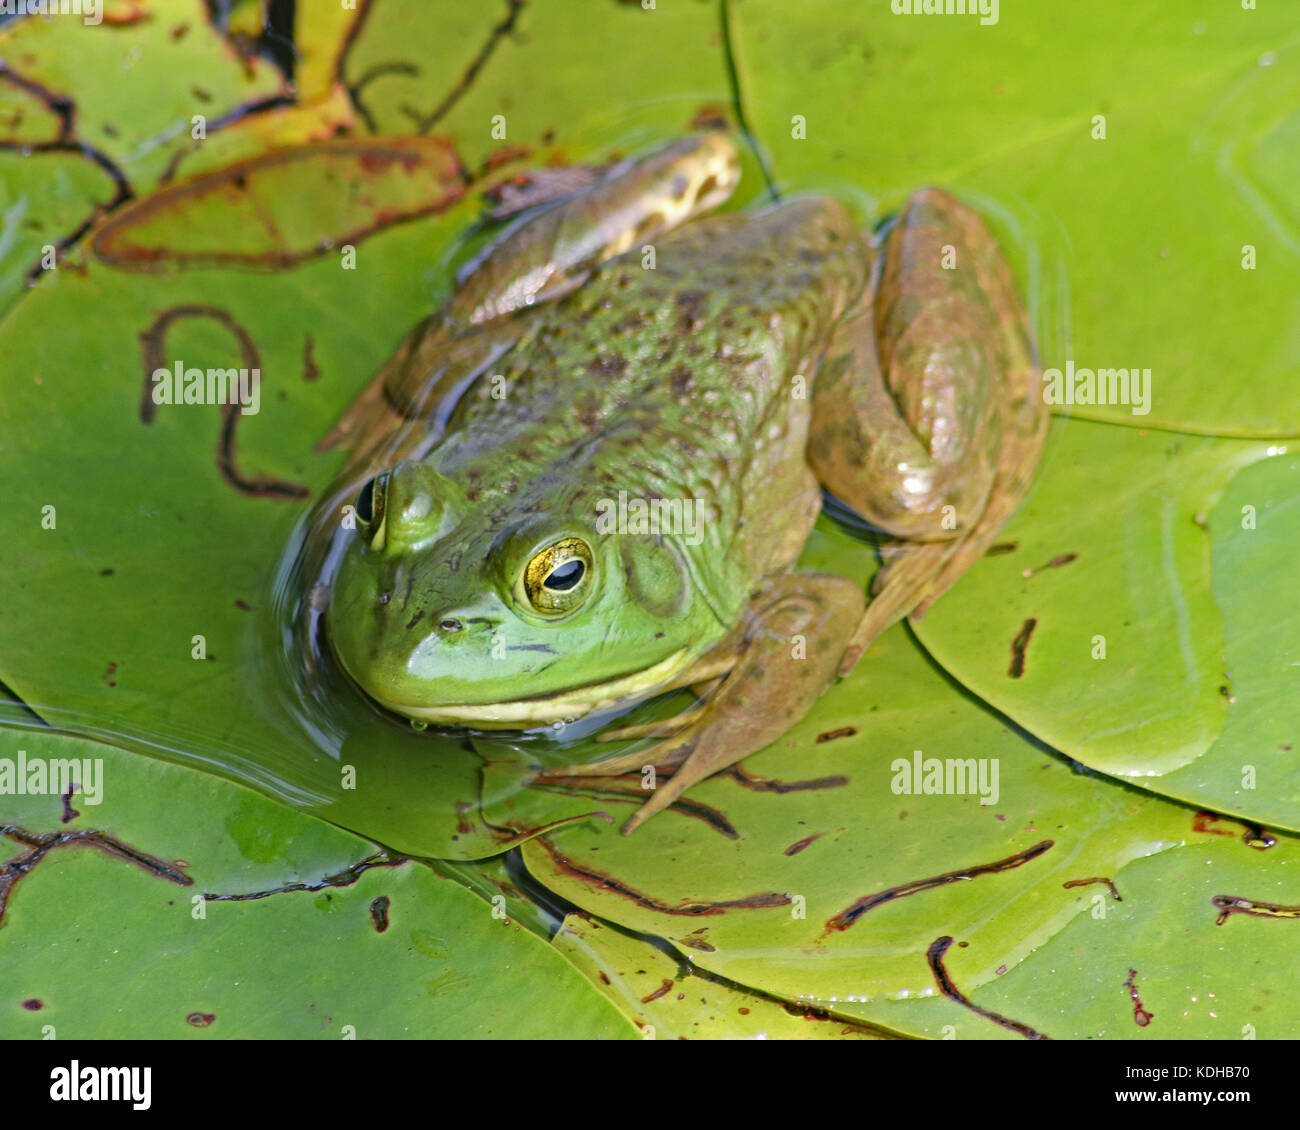 Libre d'un grand (lithobates catesbeianus grenouille verte) reposant sur le chevauchement de nénuphar vert. Banque D'Images